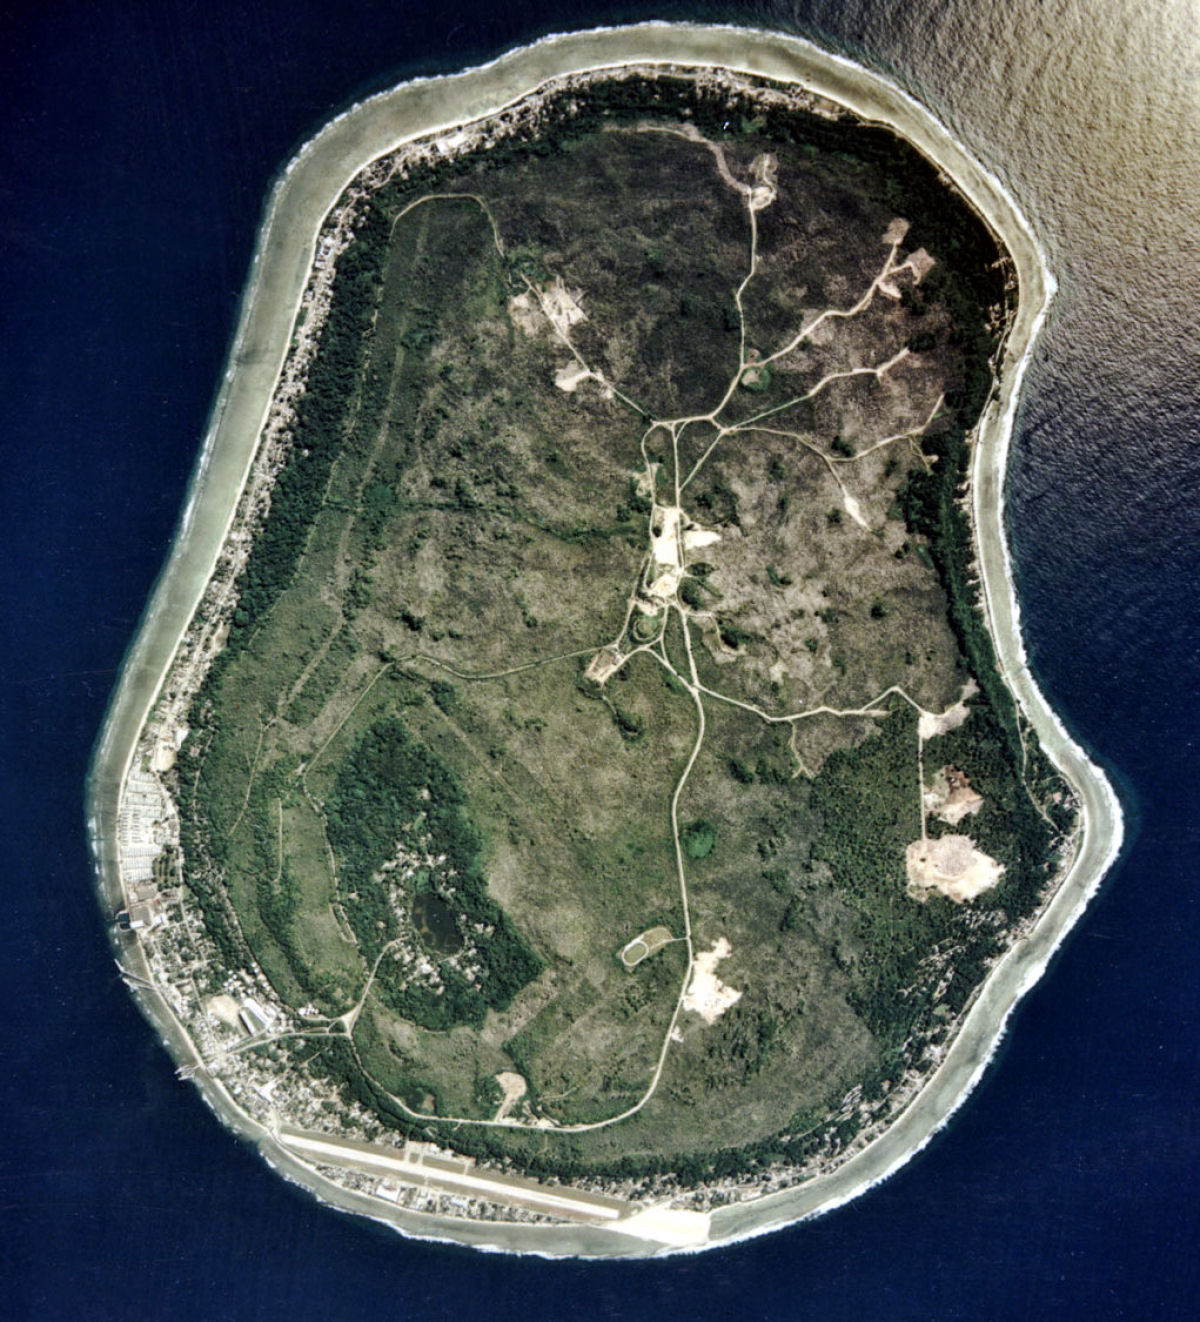 Nauru: um pas insular arrasado pela minerao de fosfato 09